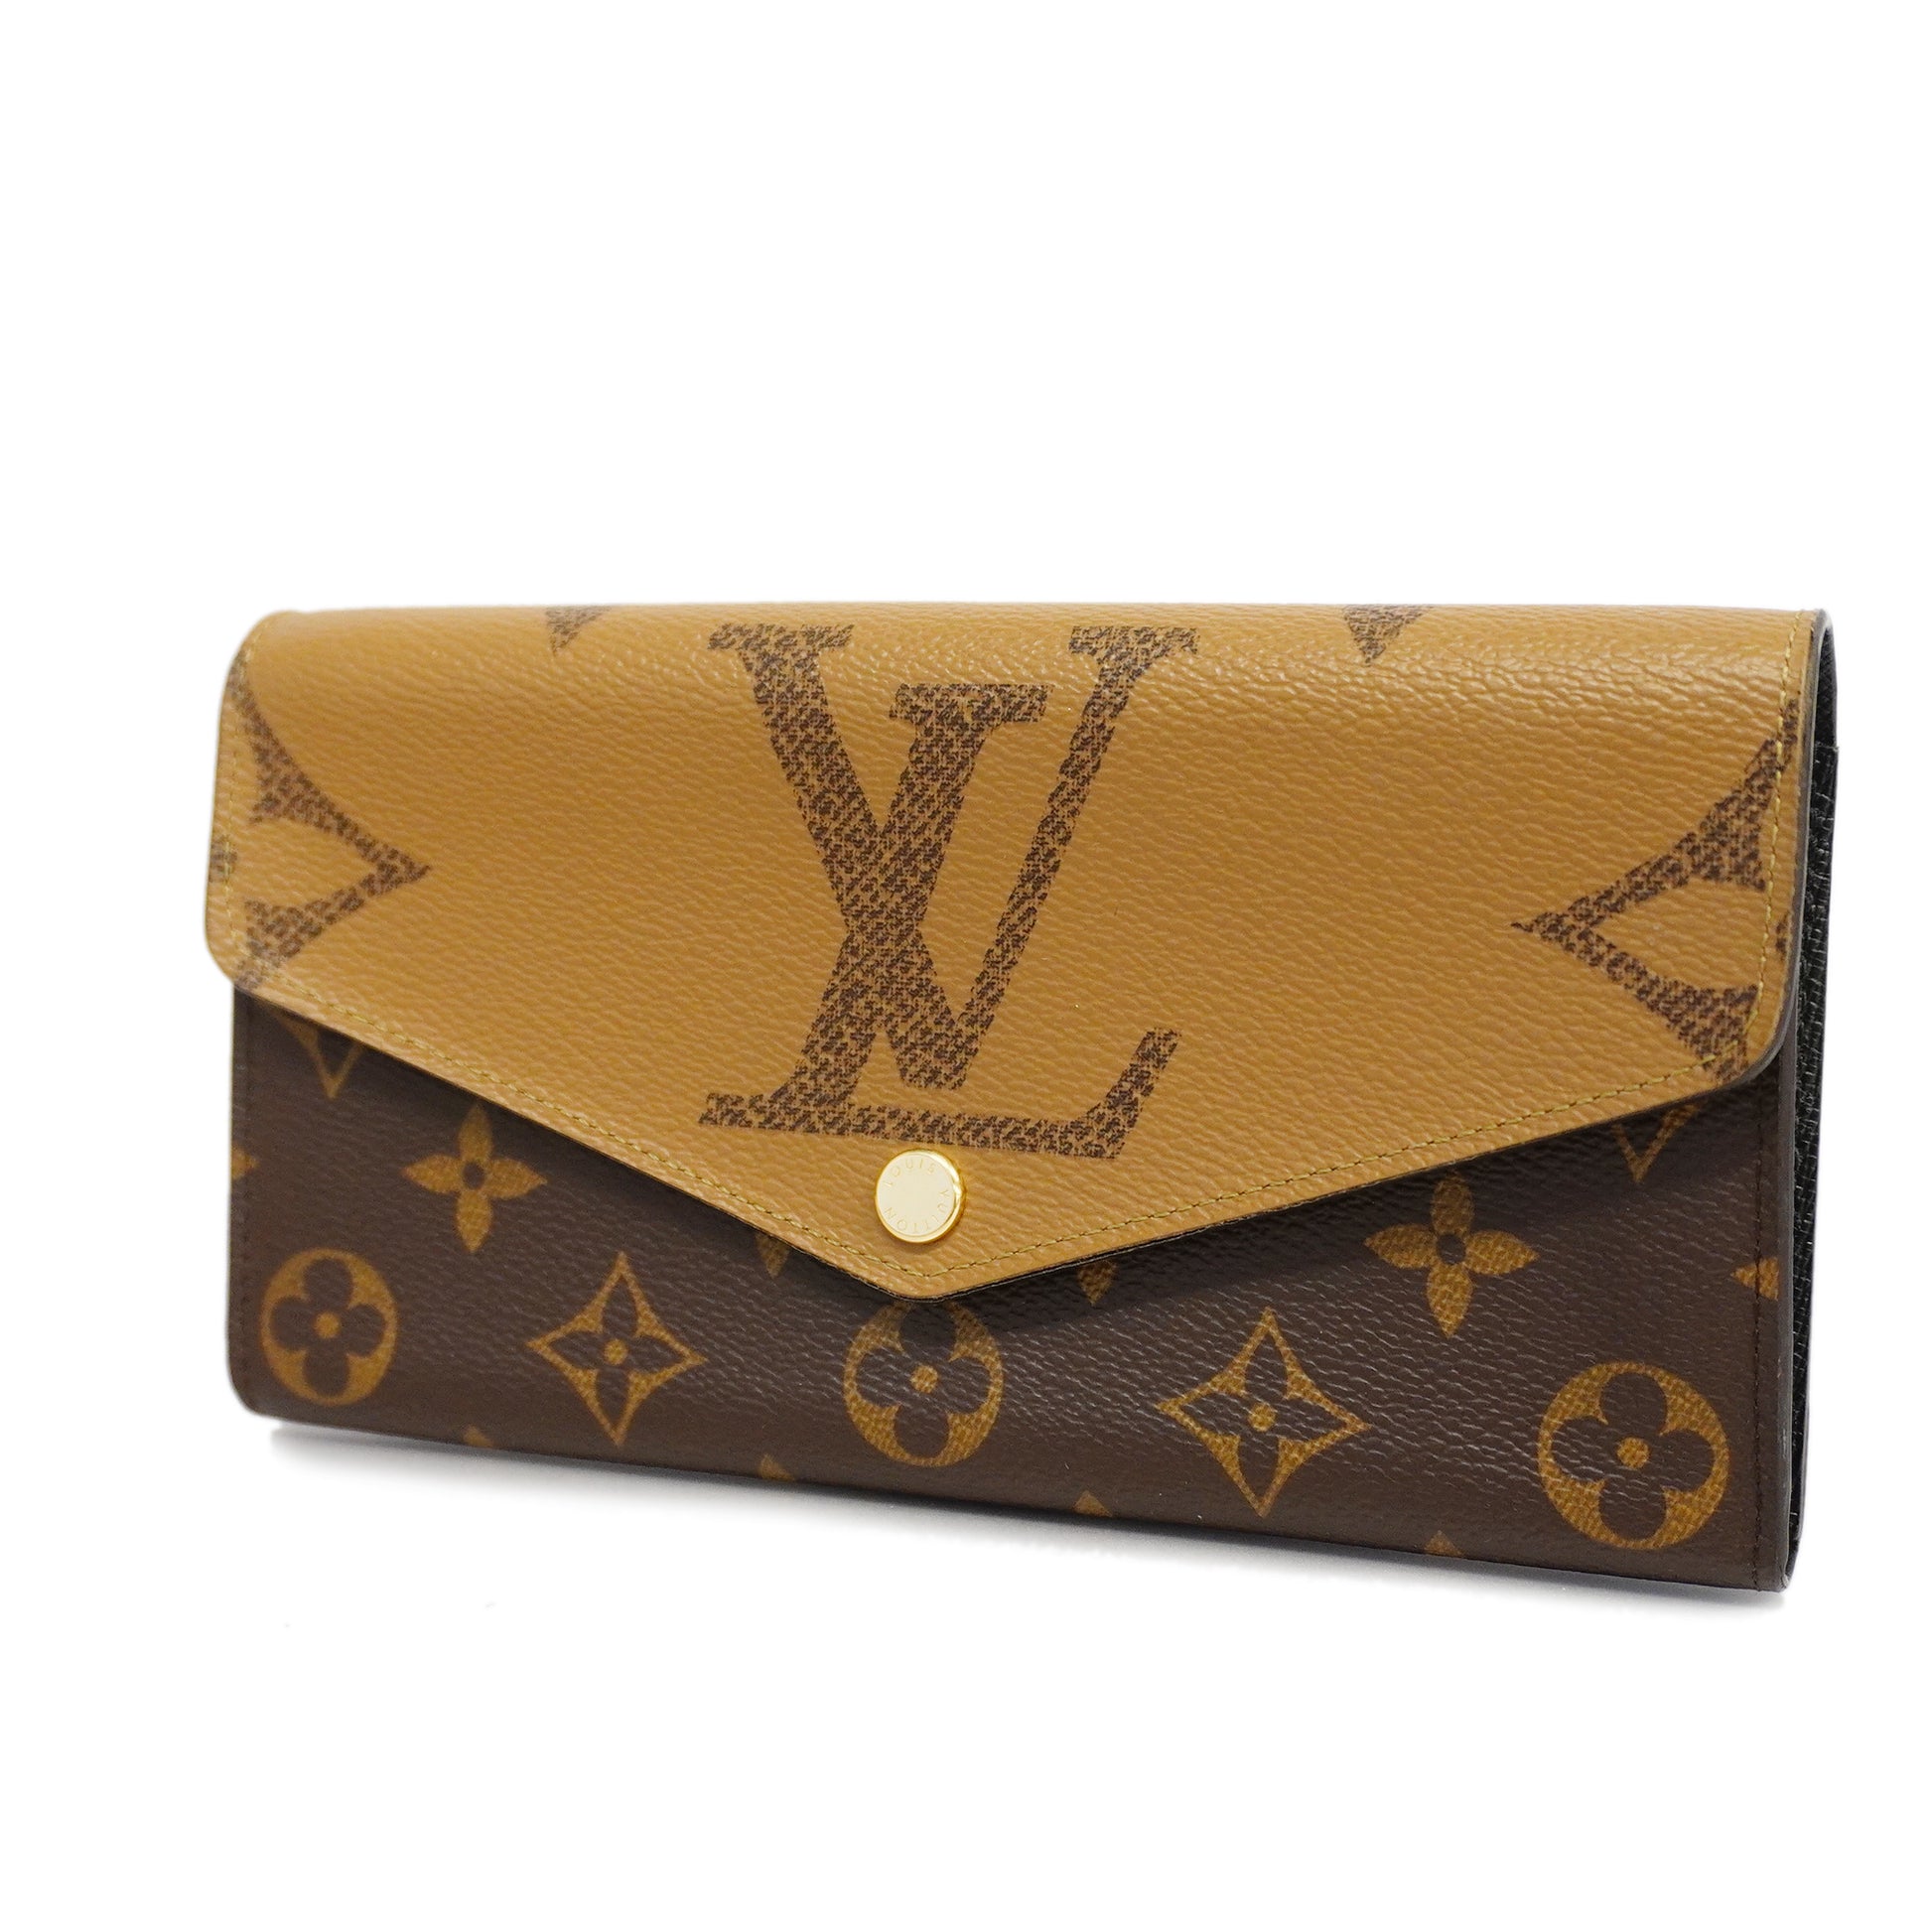 Shop Louis Vuitton Sarah wallet (PORTEFEUILLE SARAH, M80726) by